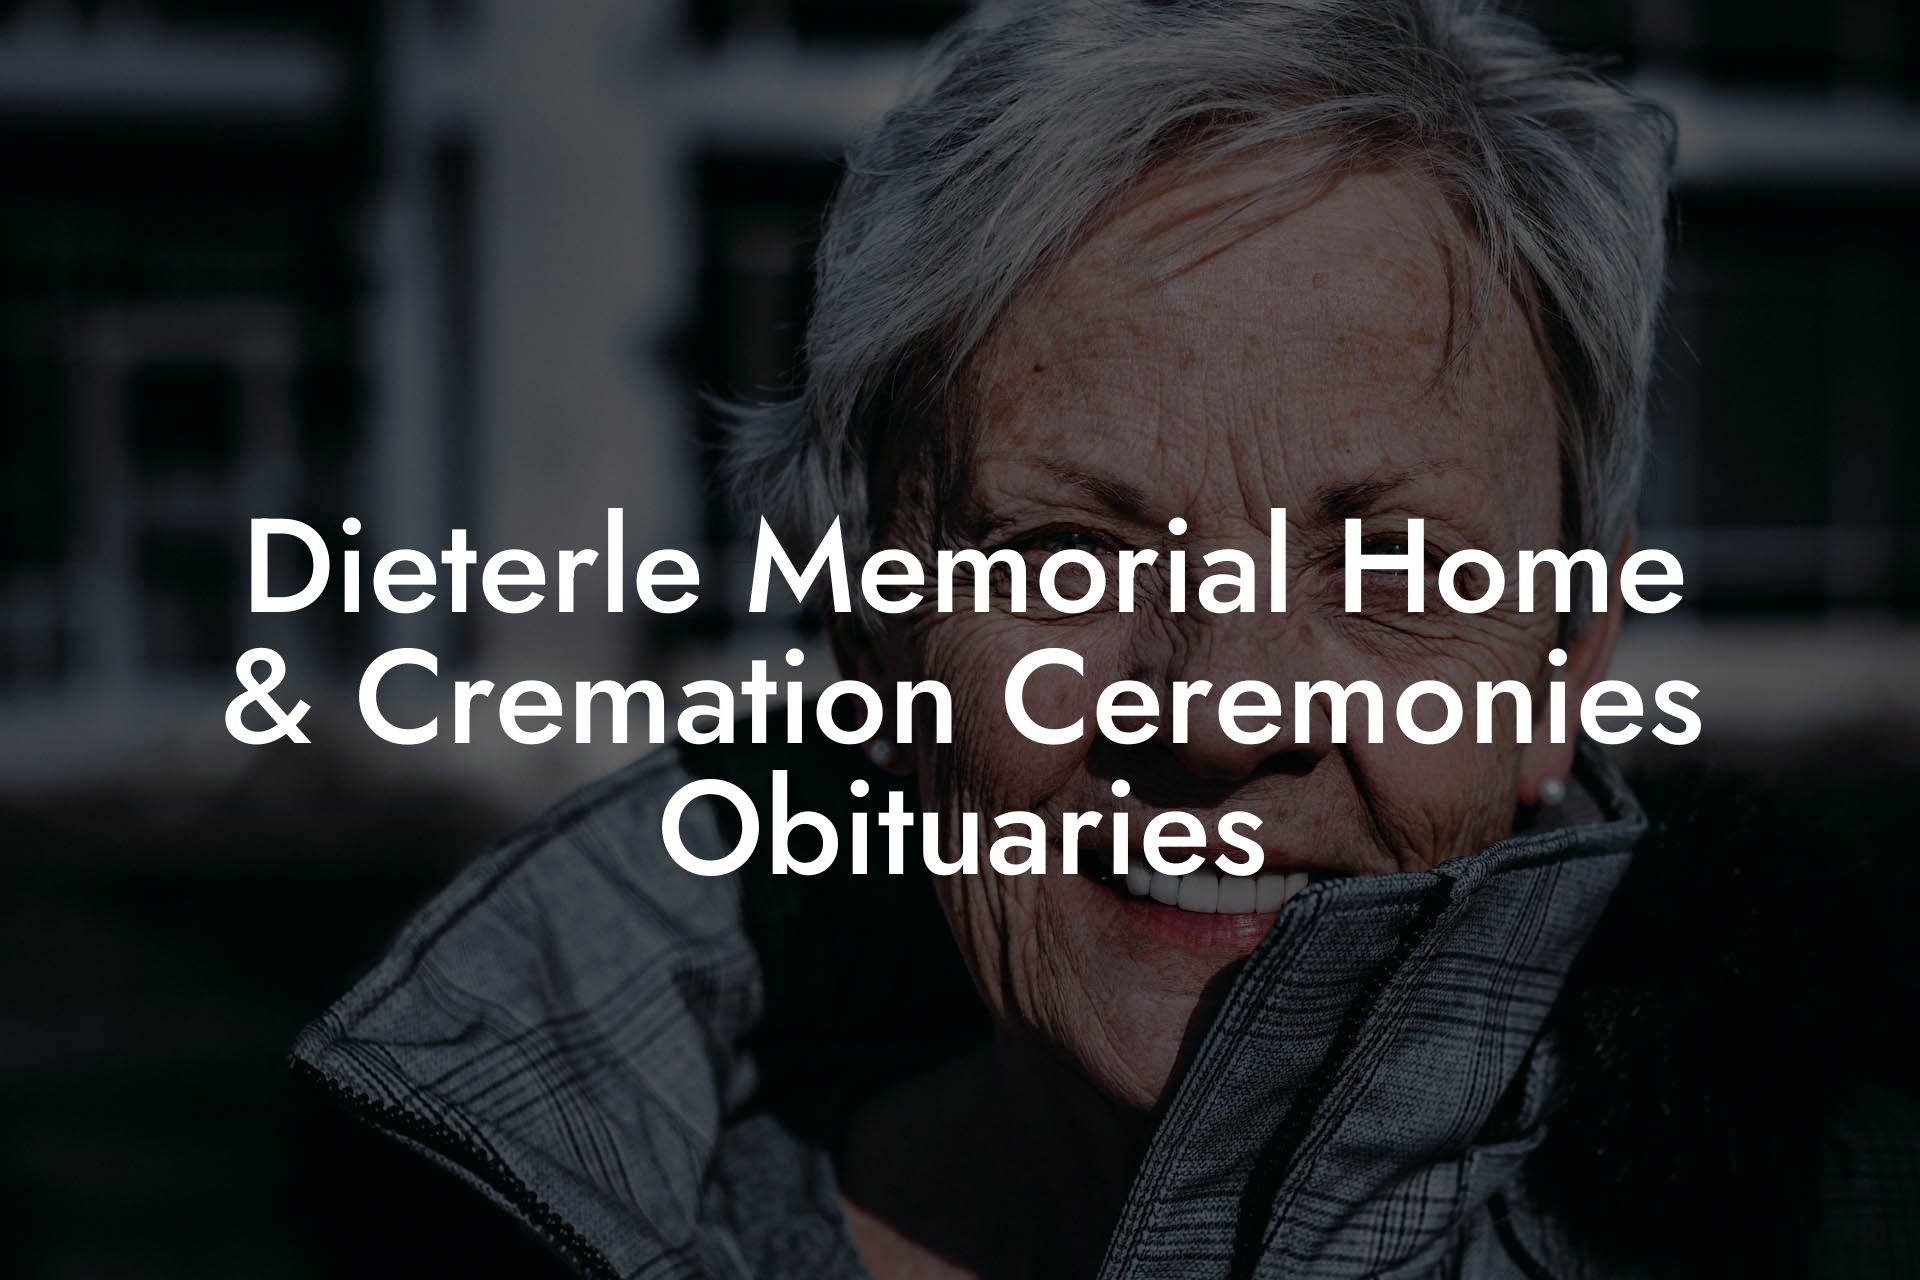 Dieterle Memorial Home & Cremation Ceremonies Obituaries